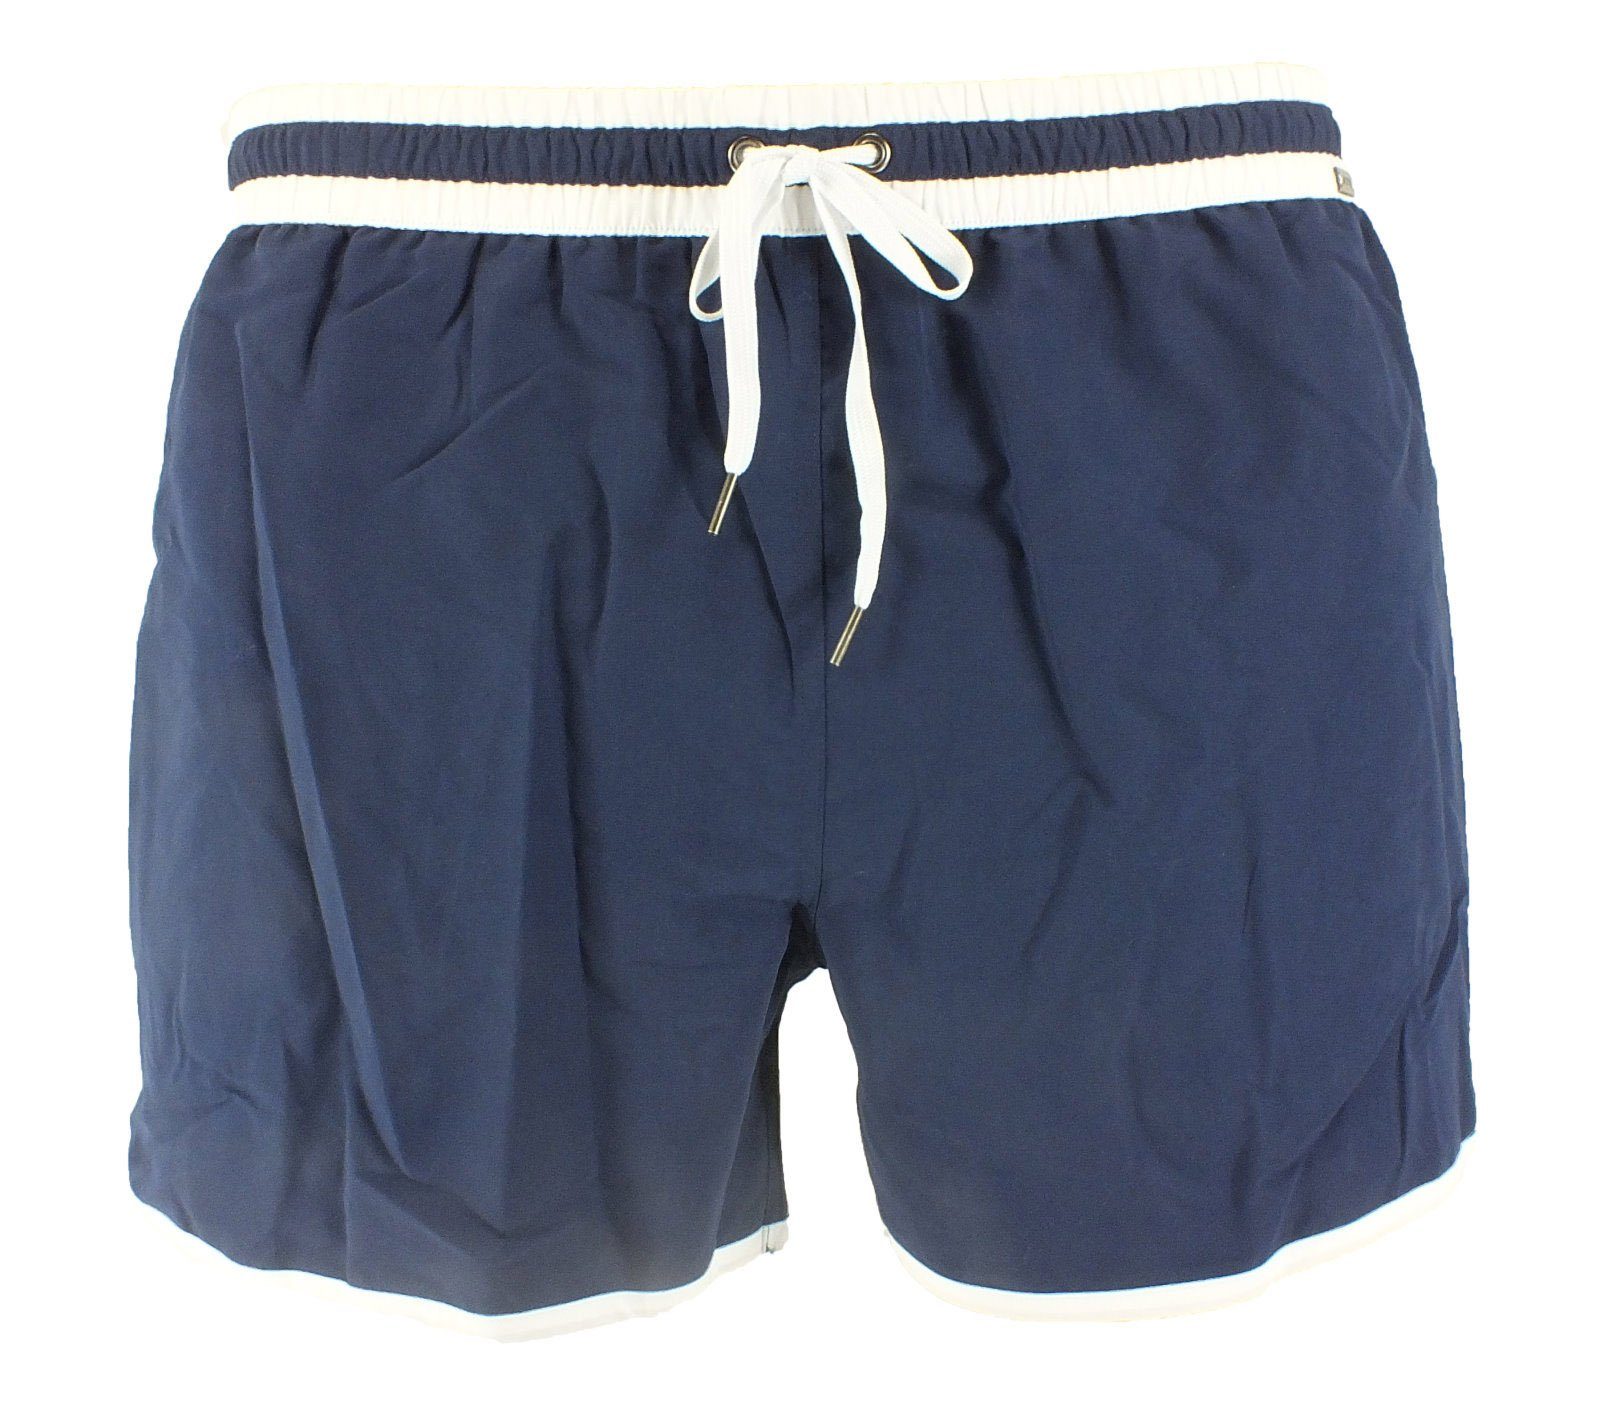 Skiny Badeshorts Short Mix Shorts Retro-Stil 8597 navy